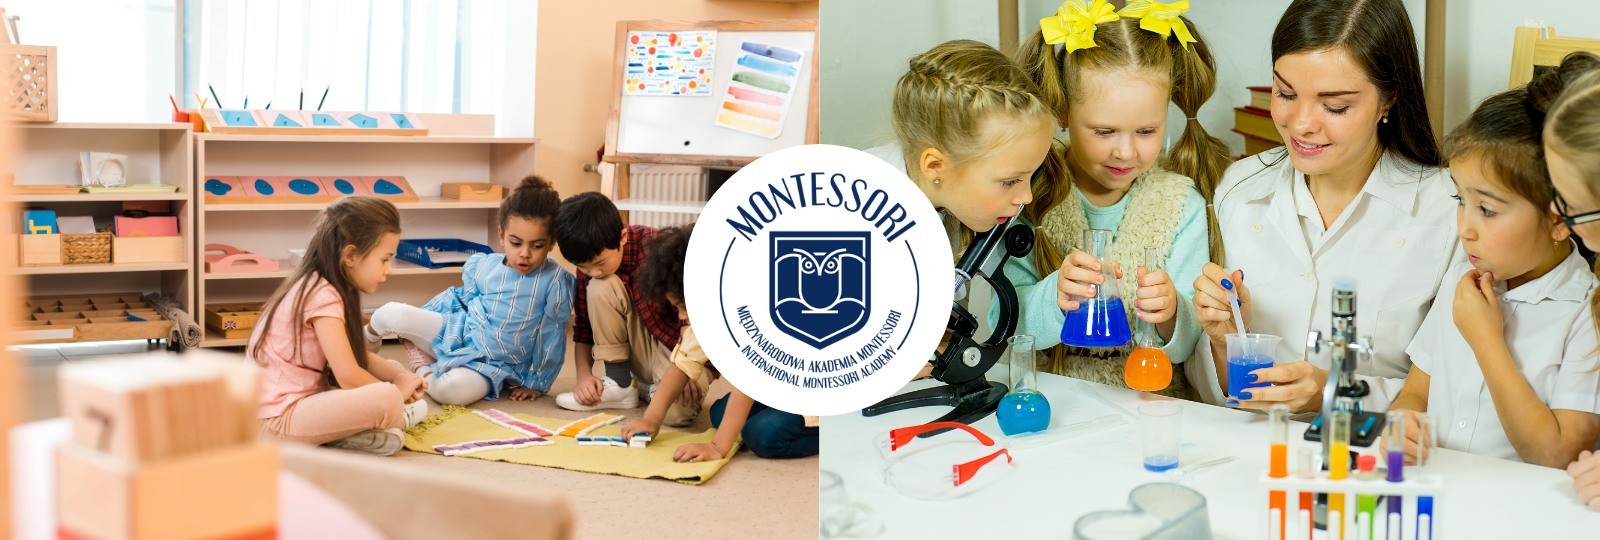 Dni otwarte w Międzynarodowej Akademii Montessori